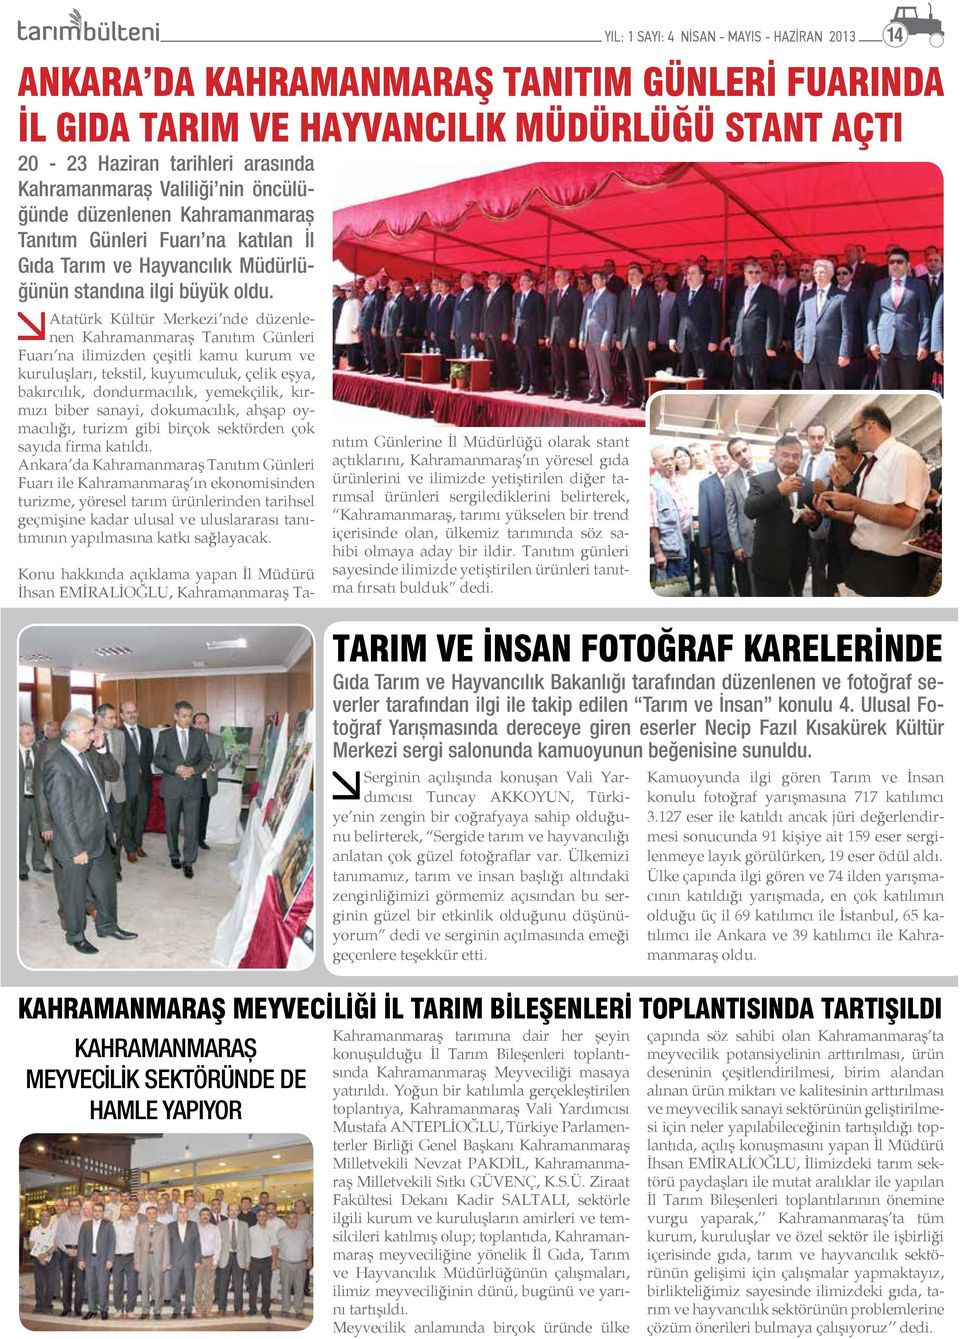 Ankara da Kahramanmaraş Tanıtım Günleri Fuarı ile Kahramanmaraş ın ekonomisinden turizme, yöresel tarım ürünlerinden tarihsel geçmişine kadar ulusal ve uluslararası tanıtımının yapılmasına katkı